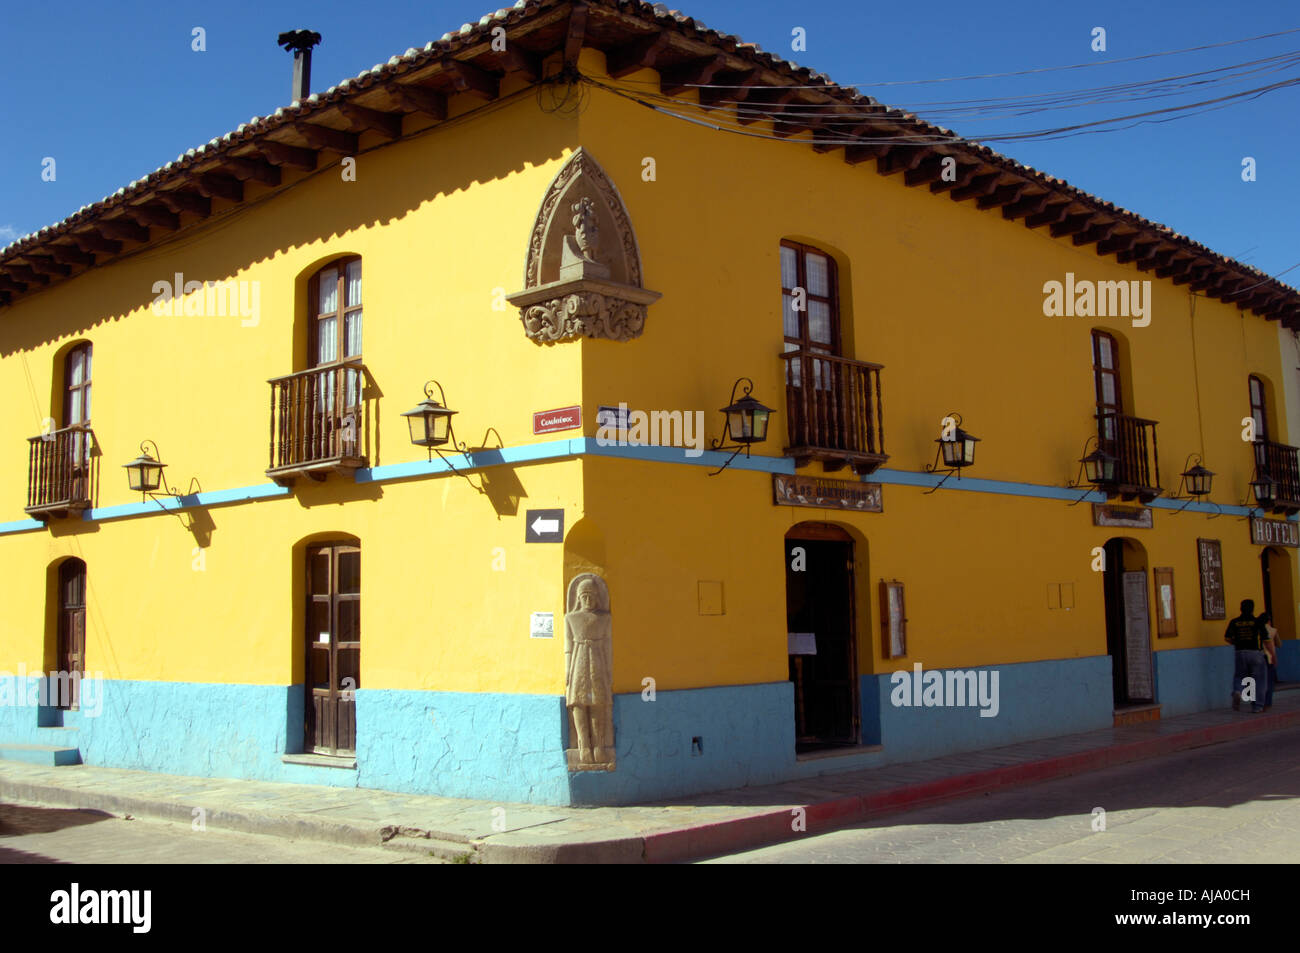 Hotel santa clara san cristóbal hi-res stock photography and images - Alamy